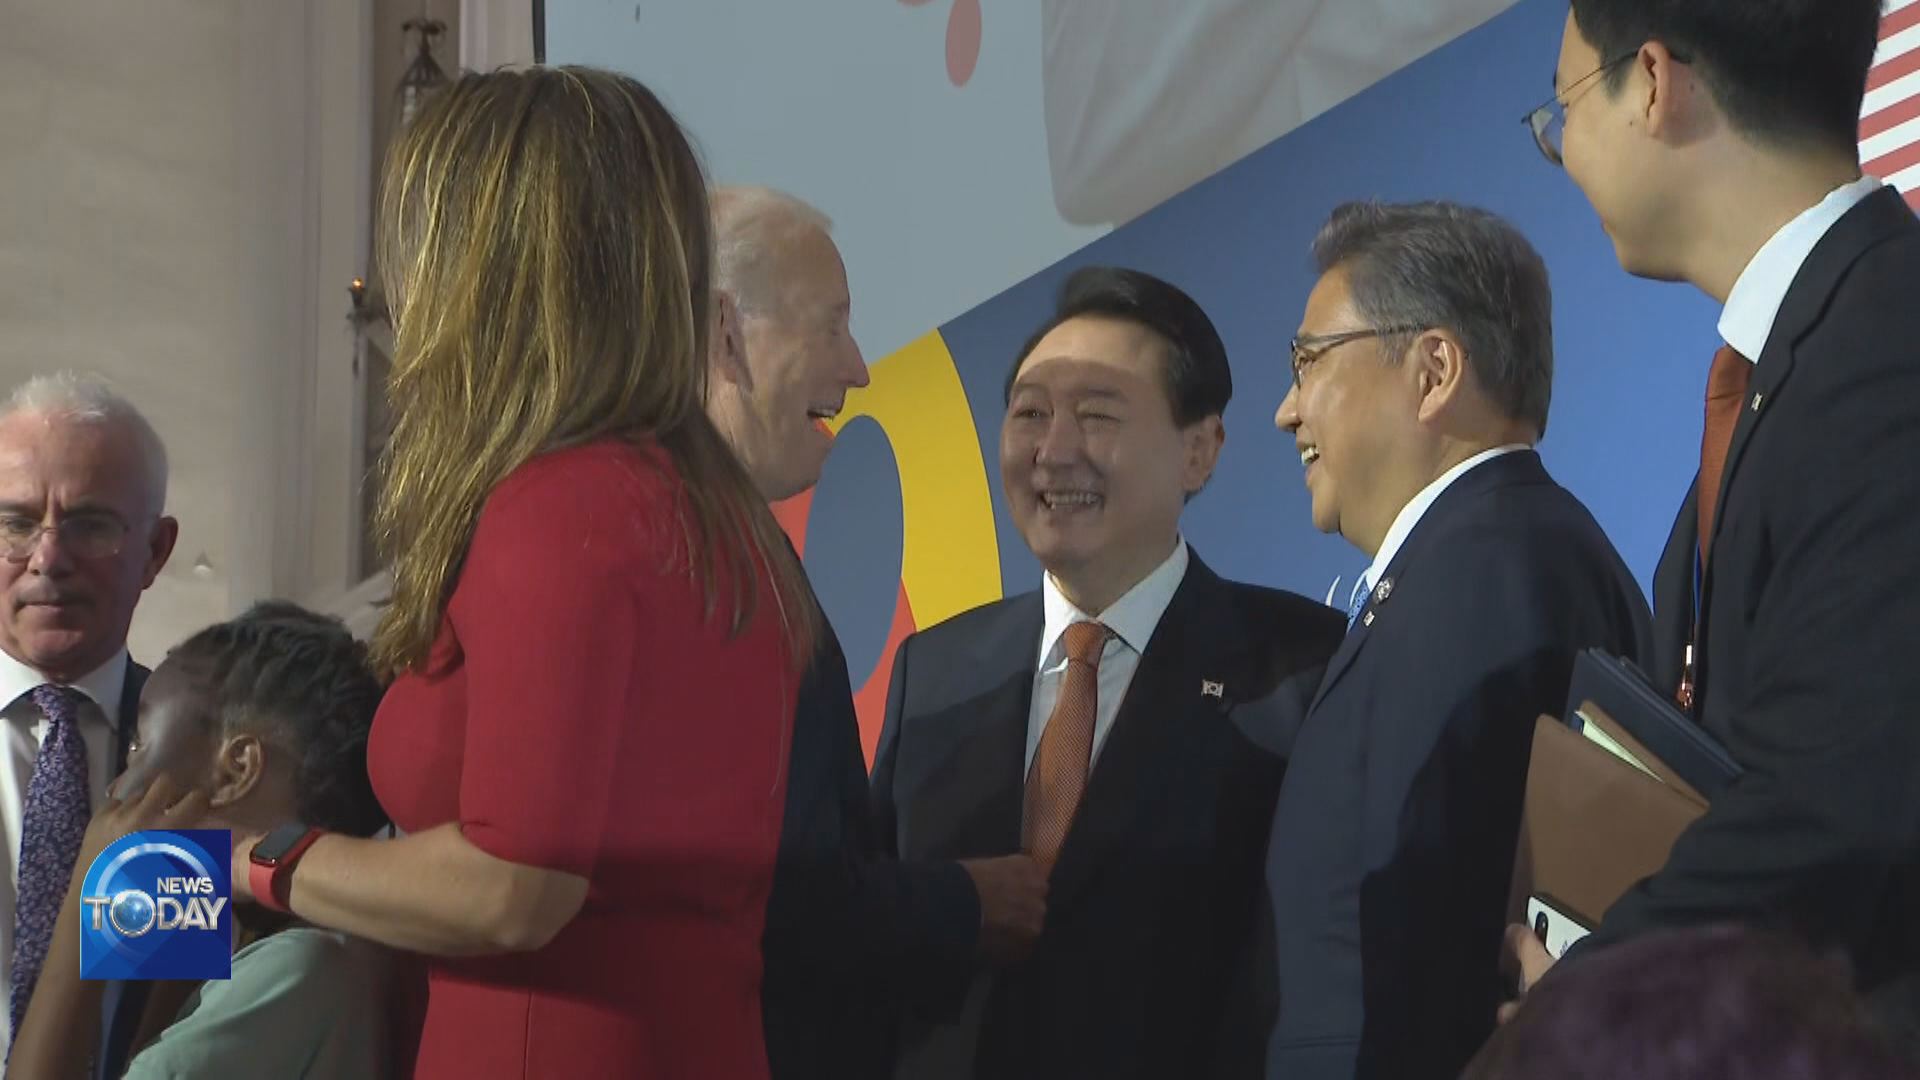 S.KOREA-U.S. LEADERS SHARE BRIEF TALK